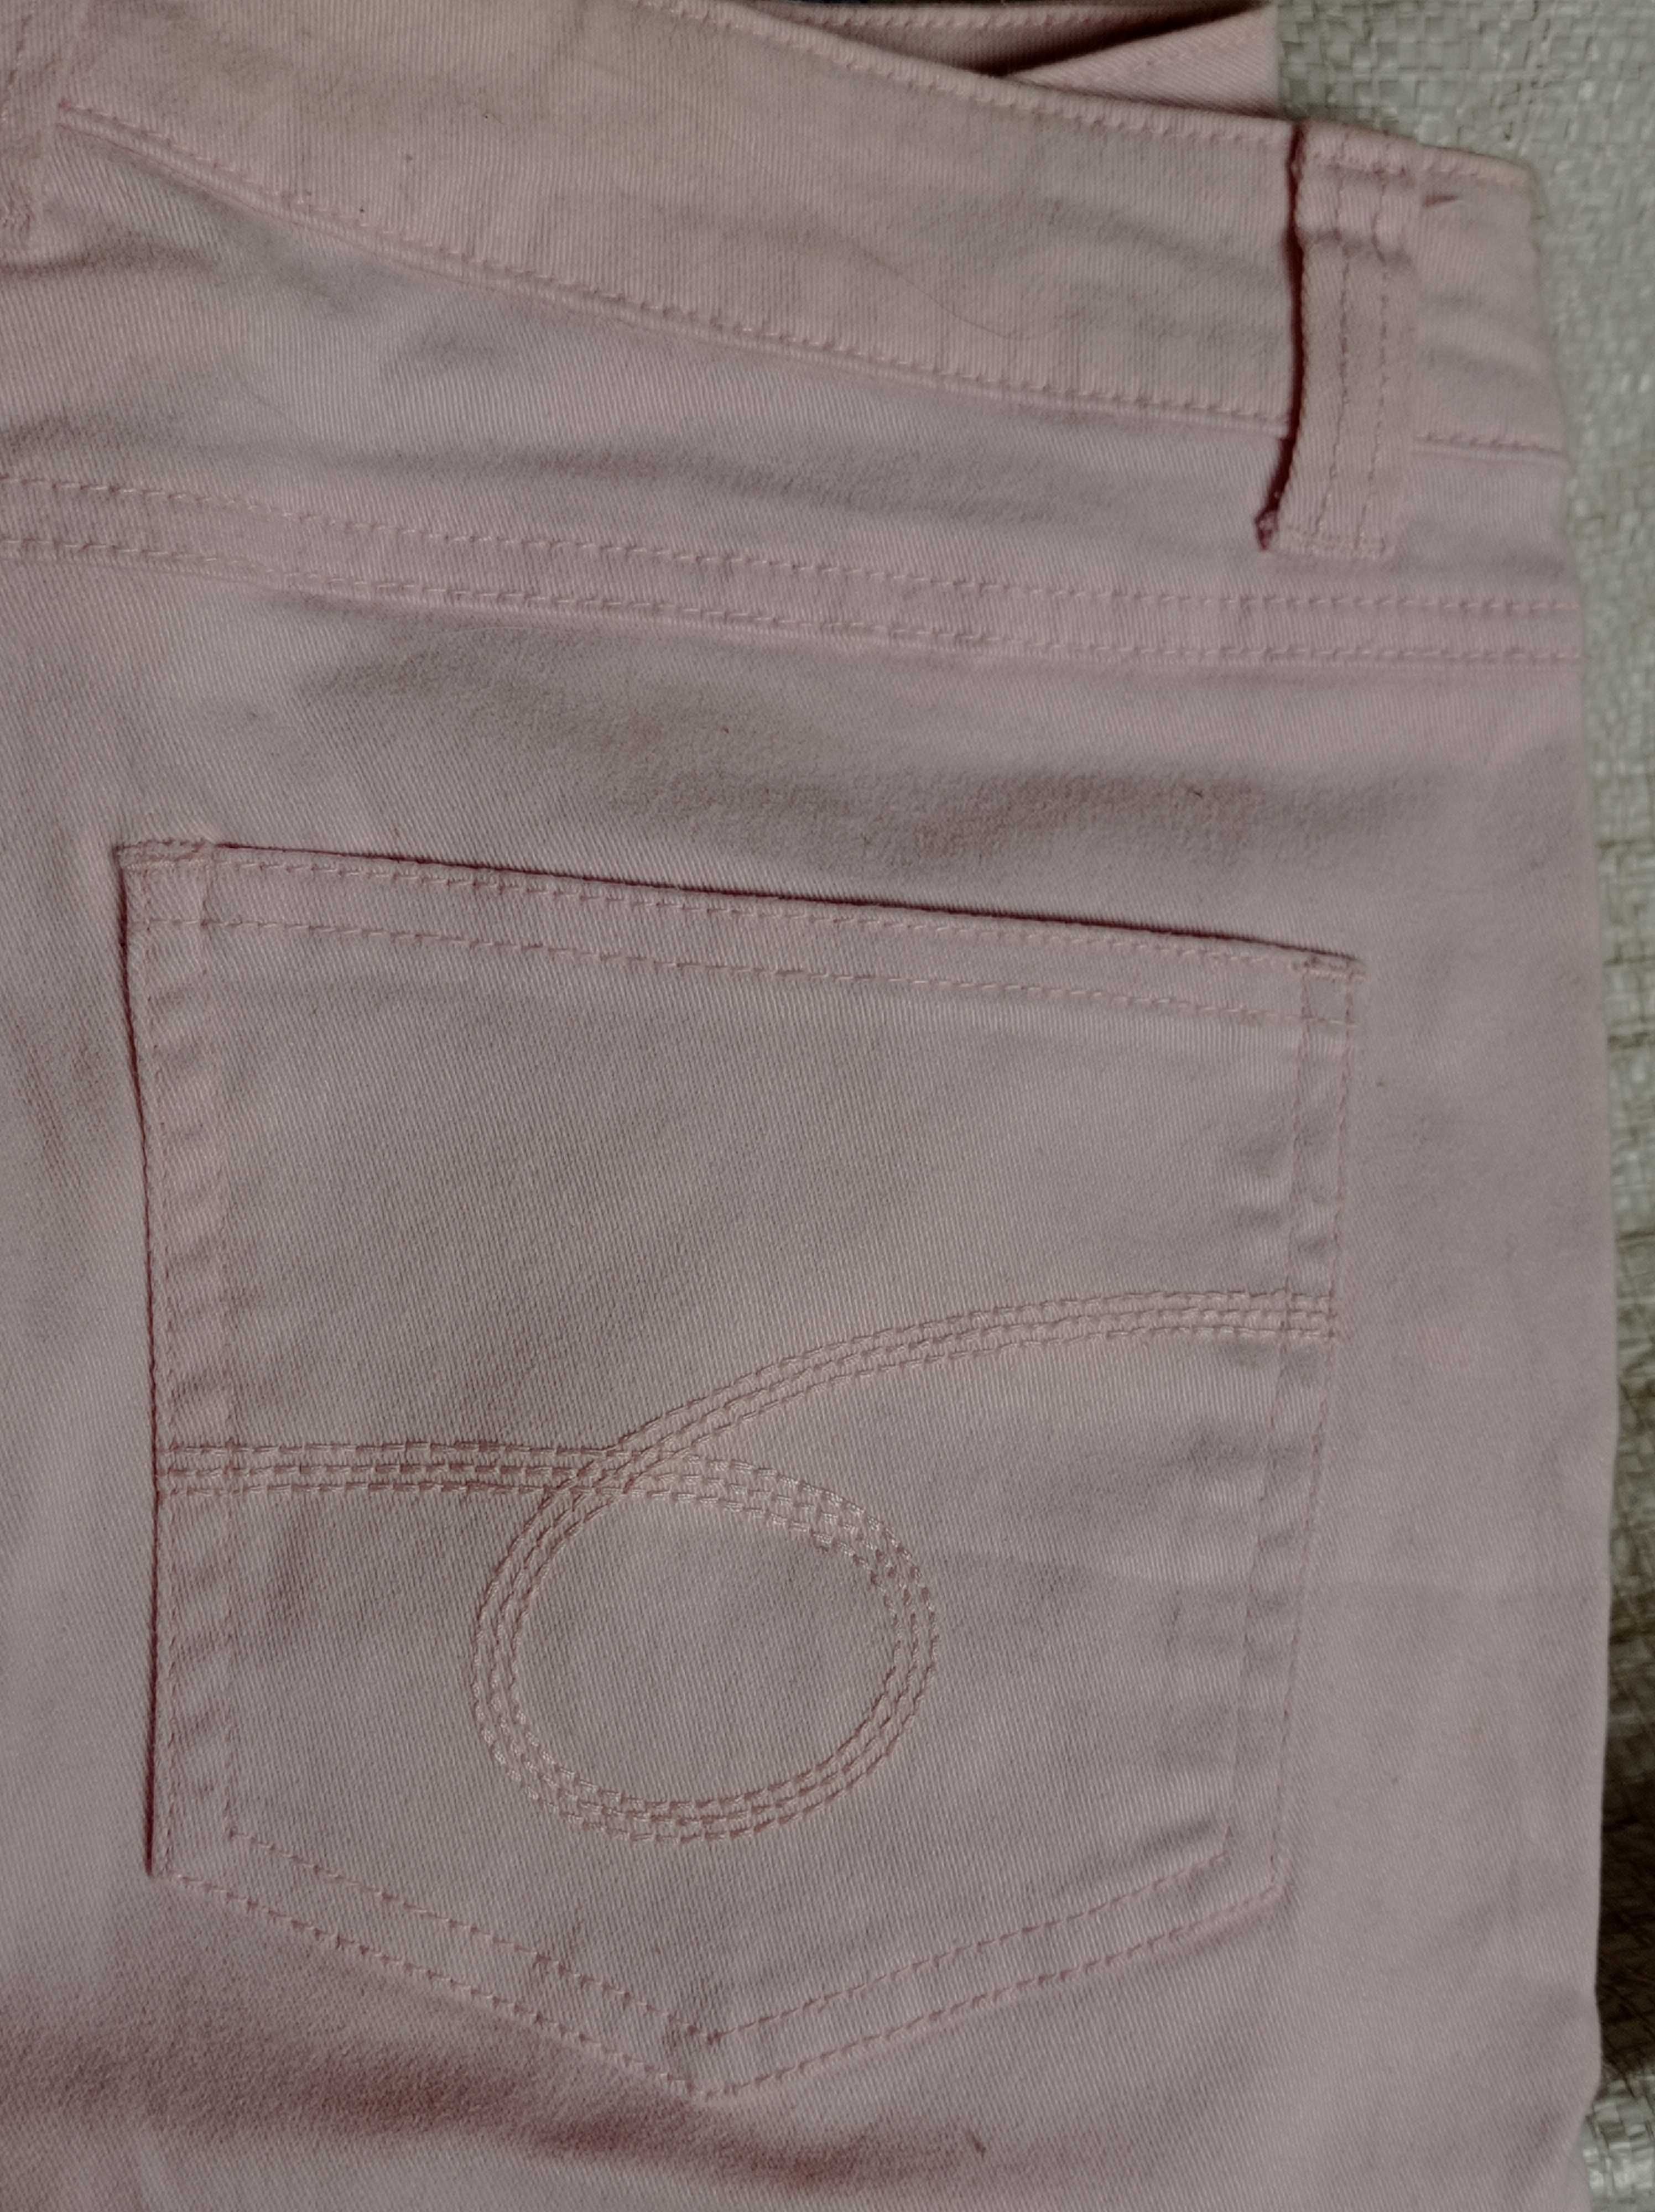 Ніжно-рожеві джинси/джинсы,гарна якість, з Америки. Розм.40,John F.Gee